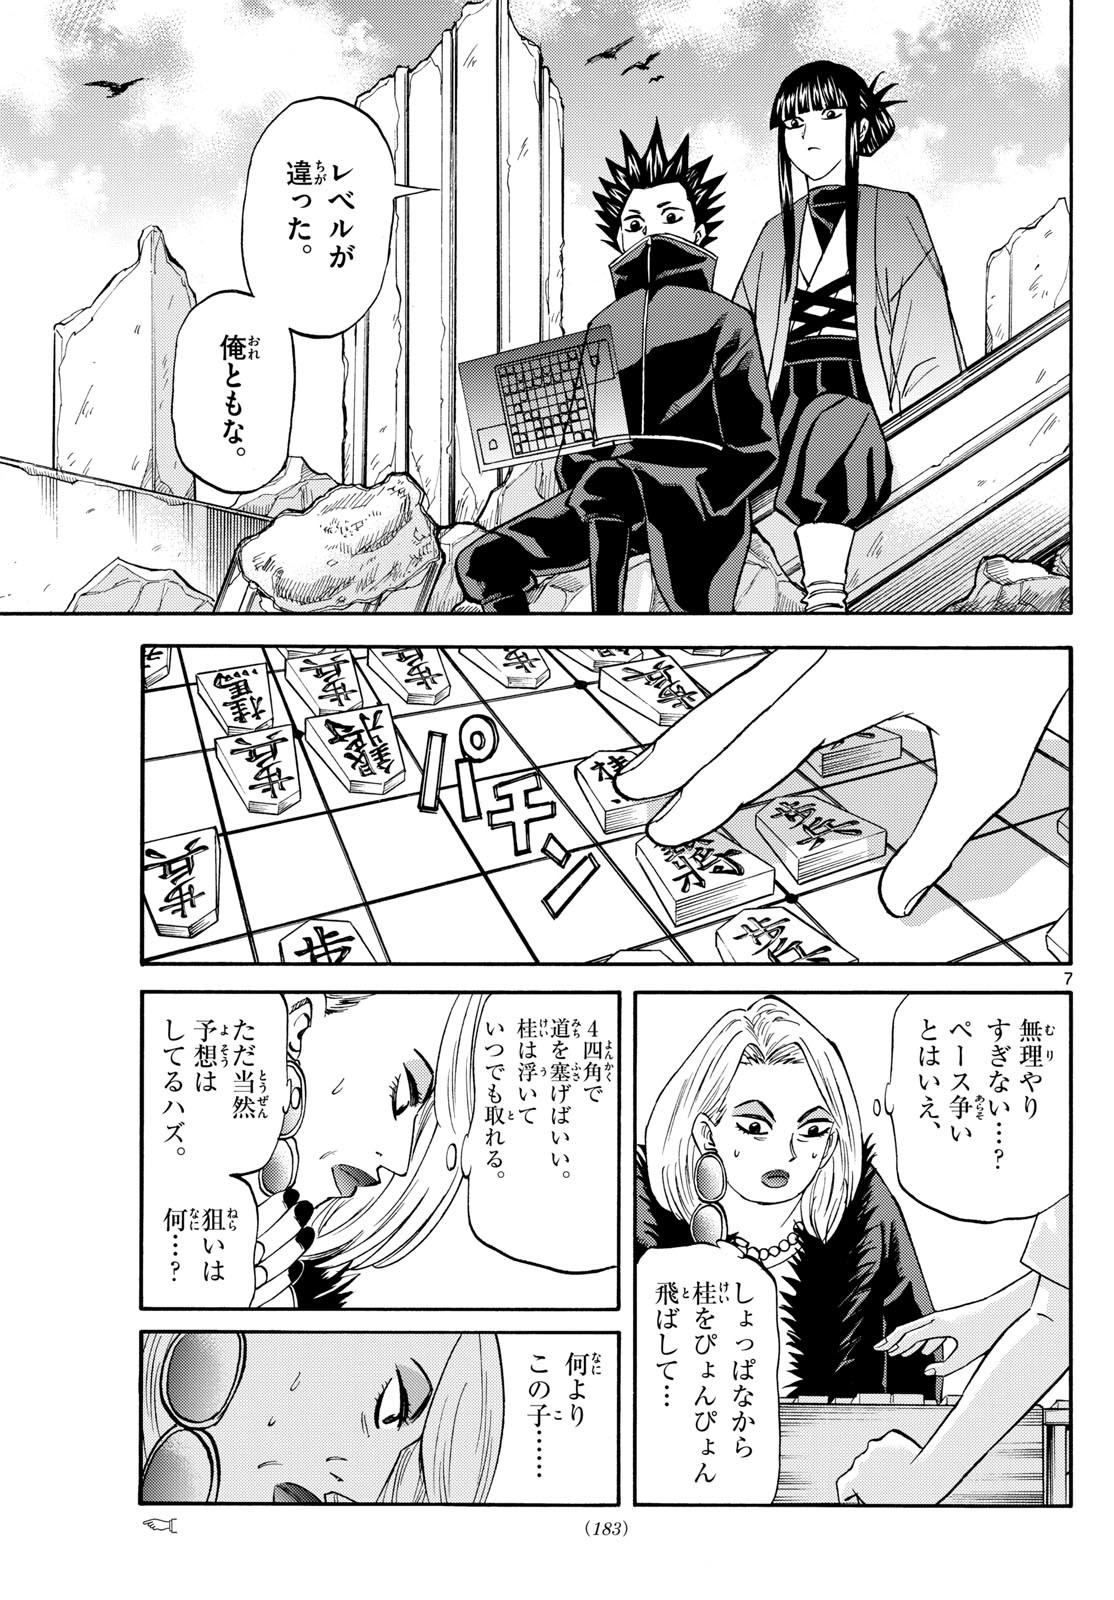 Ryu-to-Ichigo - Chapter 192 - Page 7